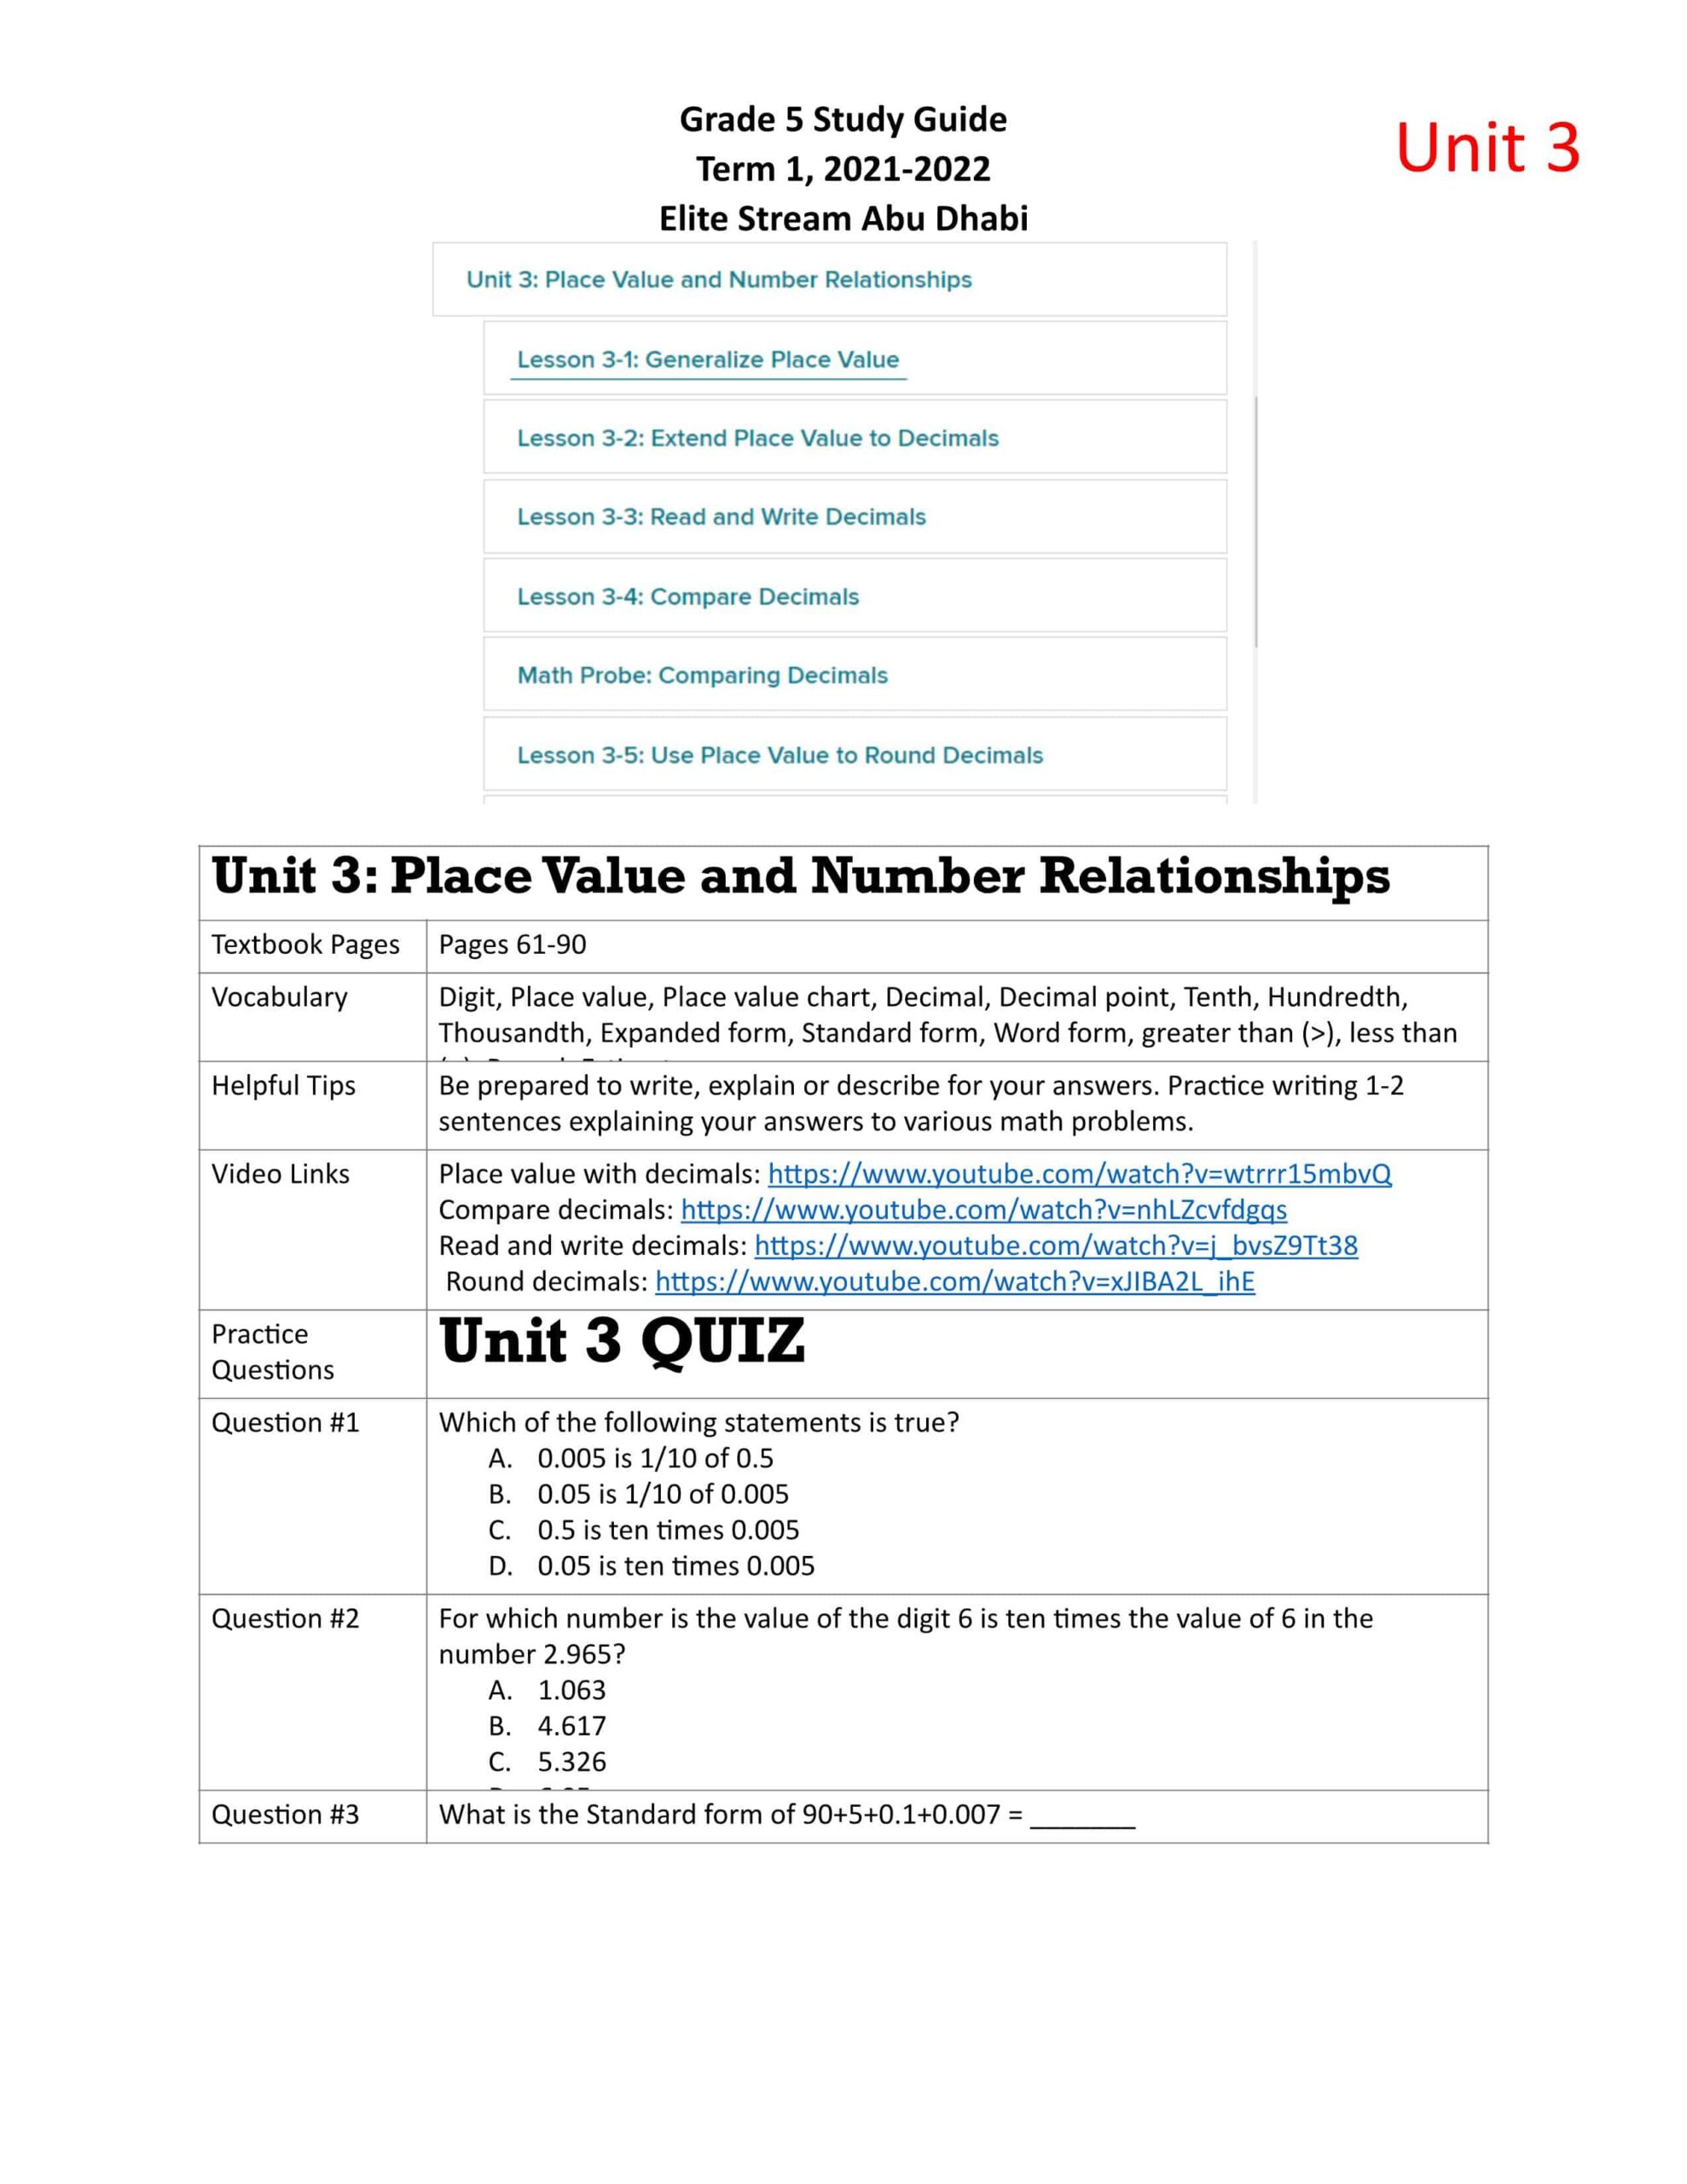 ورقة عمل Place Value and Number Relationships الرياضيات المتكاملة الصف الخامس